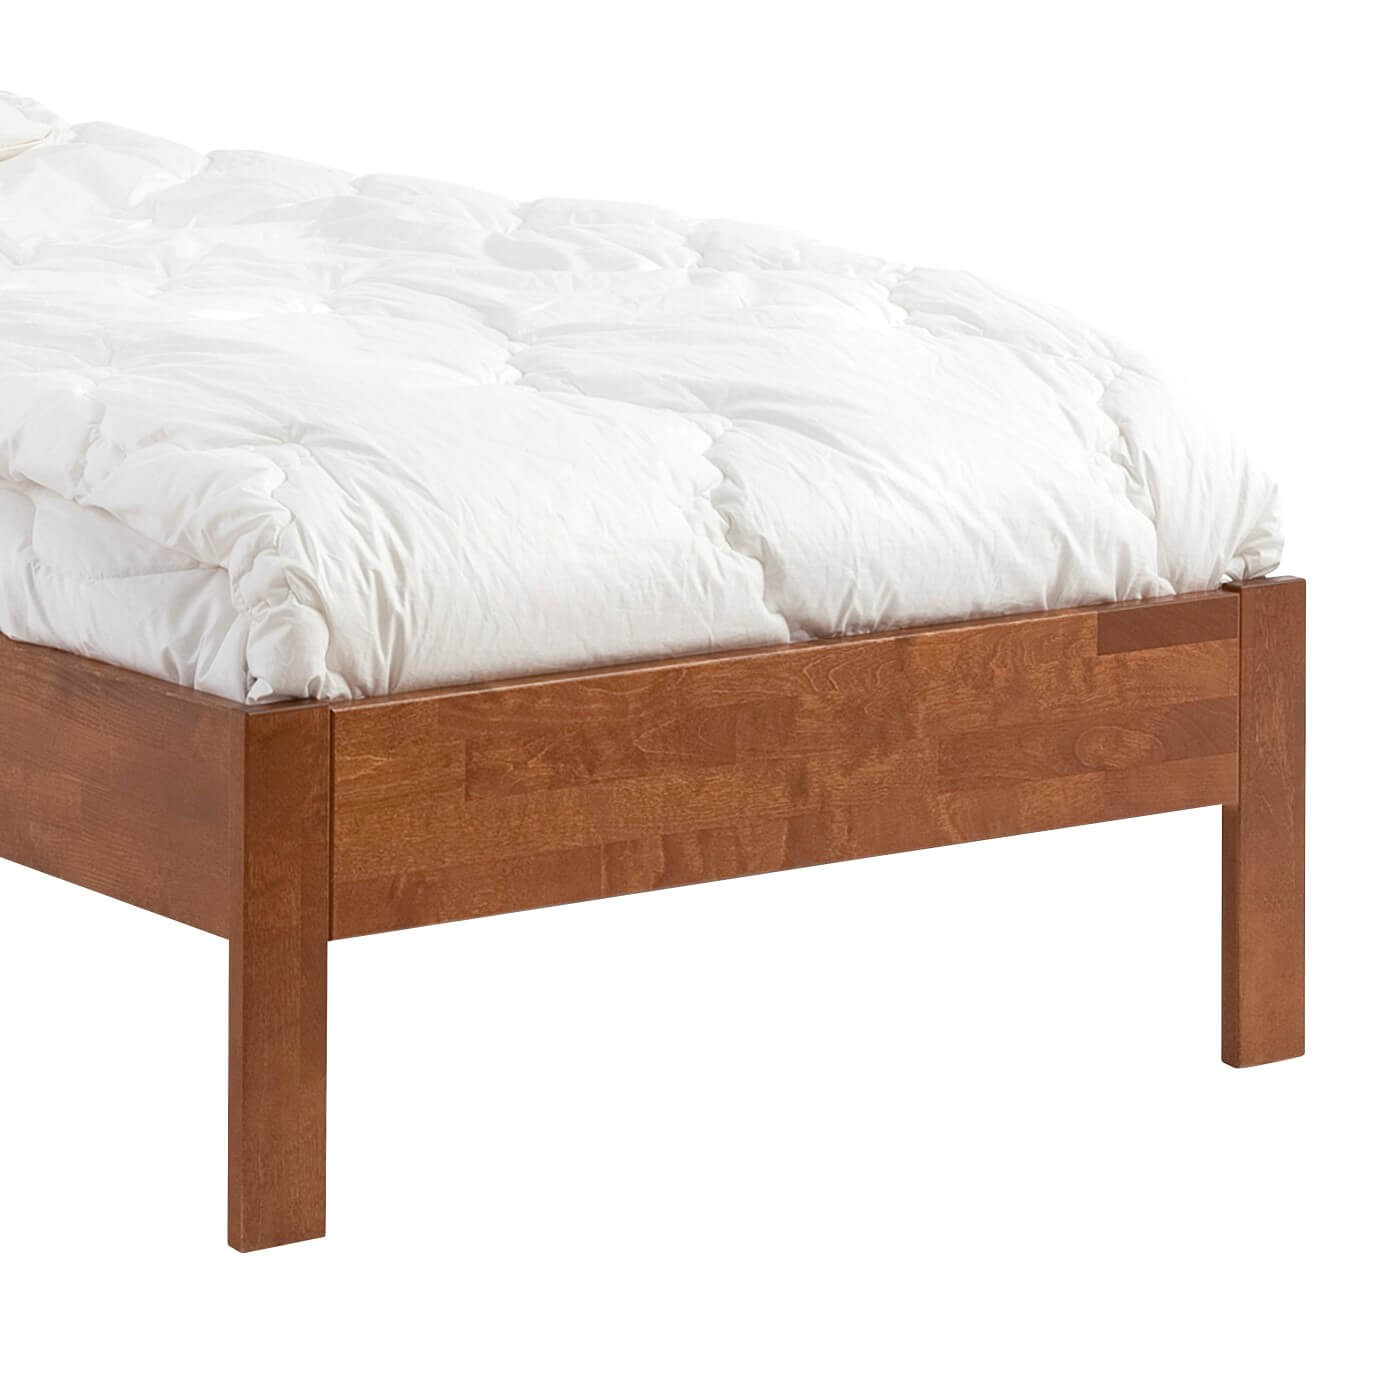 Łóżko drewniane 120x200 KOLI. Przybliżony widok na wysokie proste nóżki łóżka z drewna brzozy w kolorze orzech. Skandynawski design